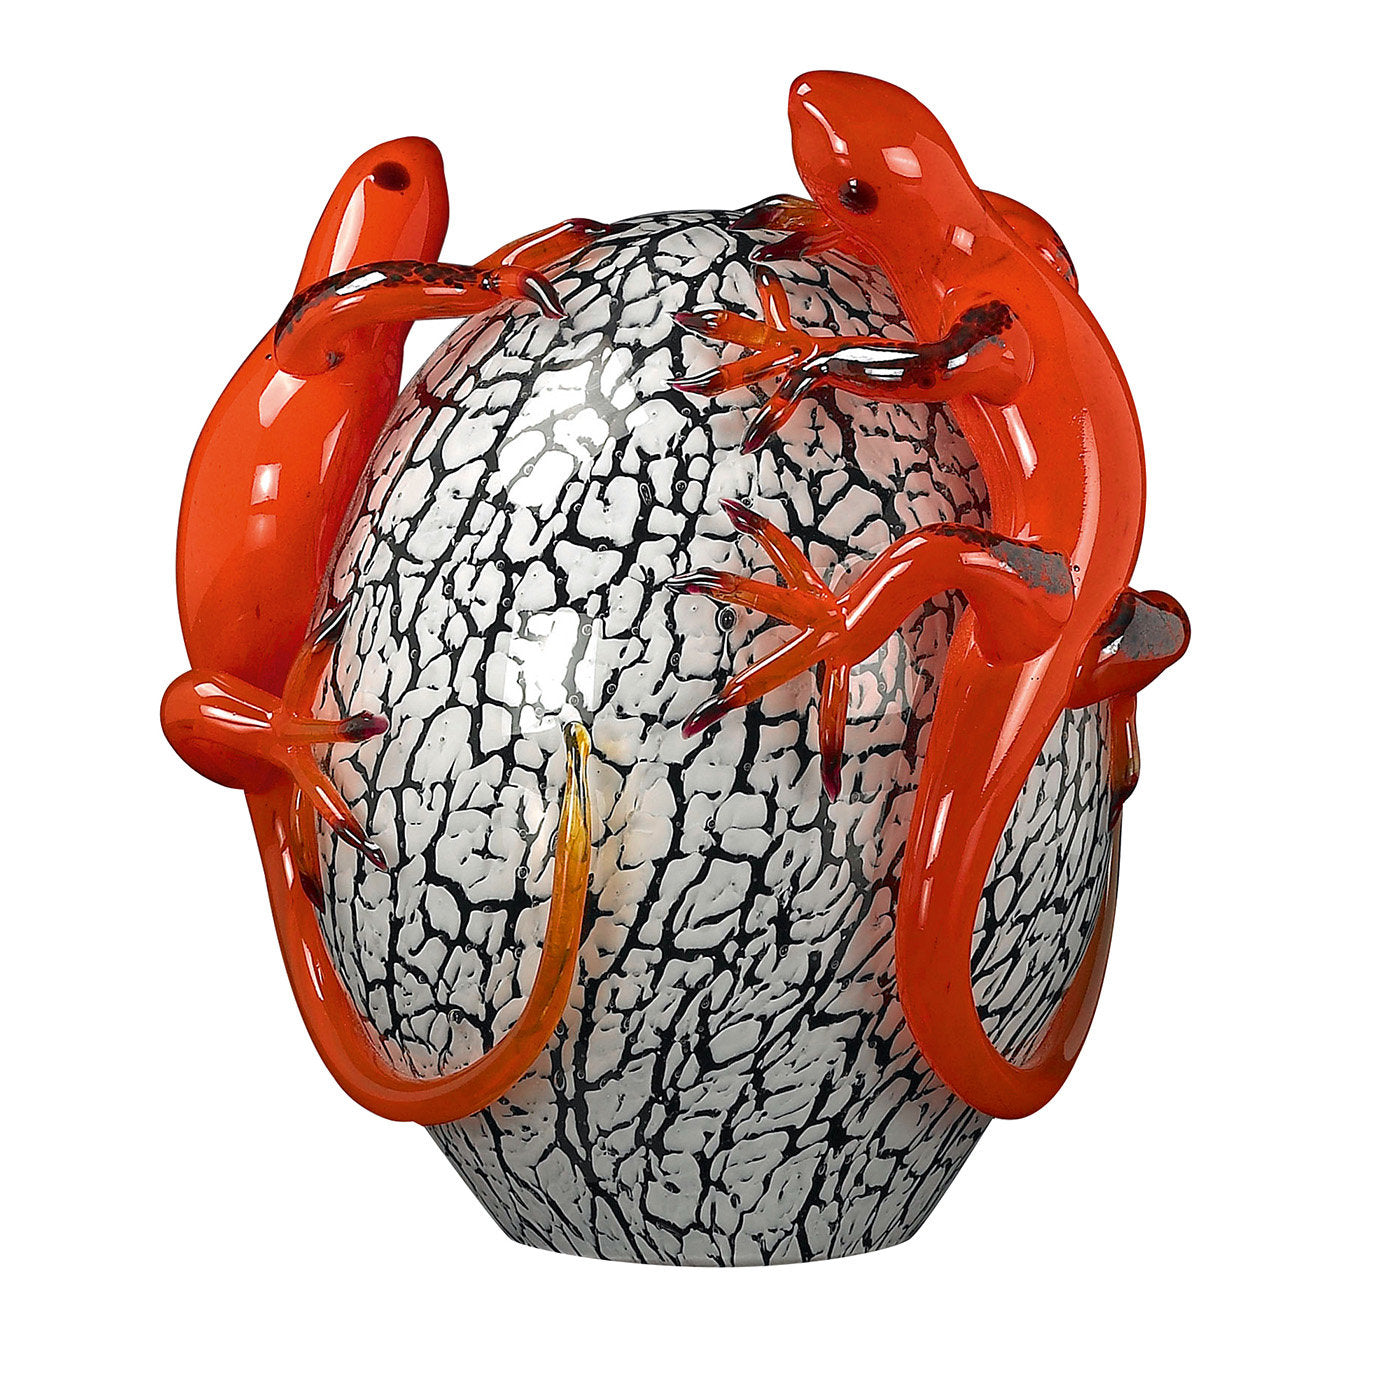 Uovo di cristallo con gechi di vetro rosso  - Vista principale